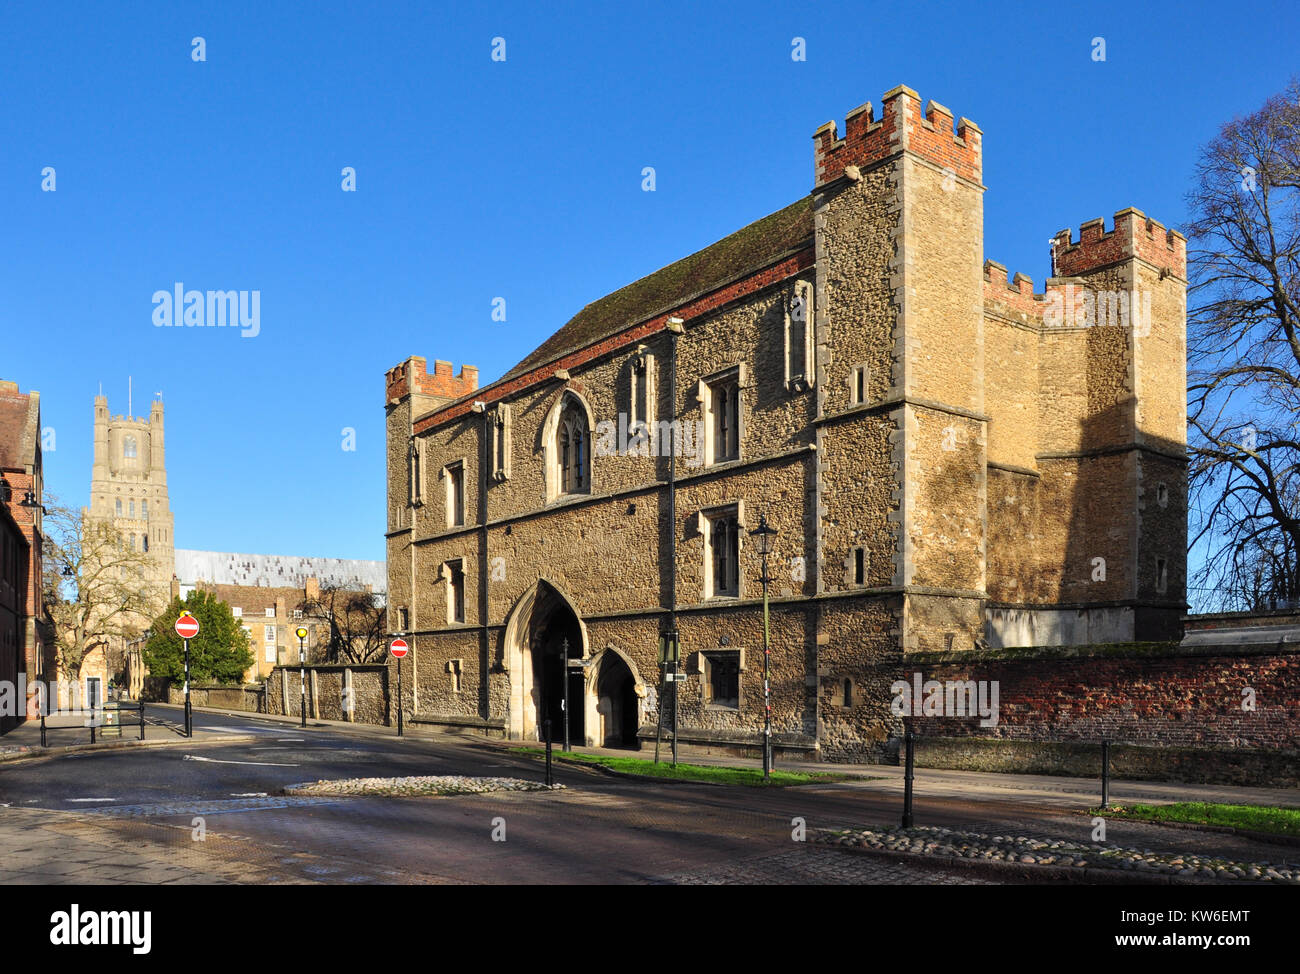 The Porta, Ely, Cambridgeshire, England, UK Stock Photo